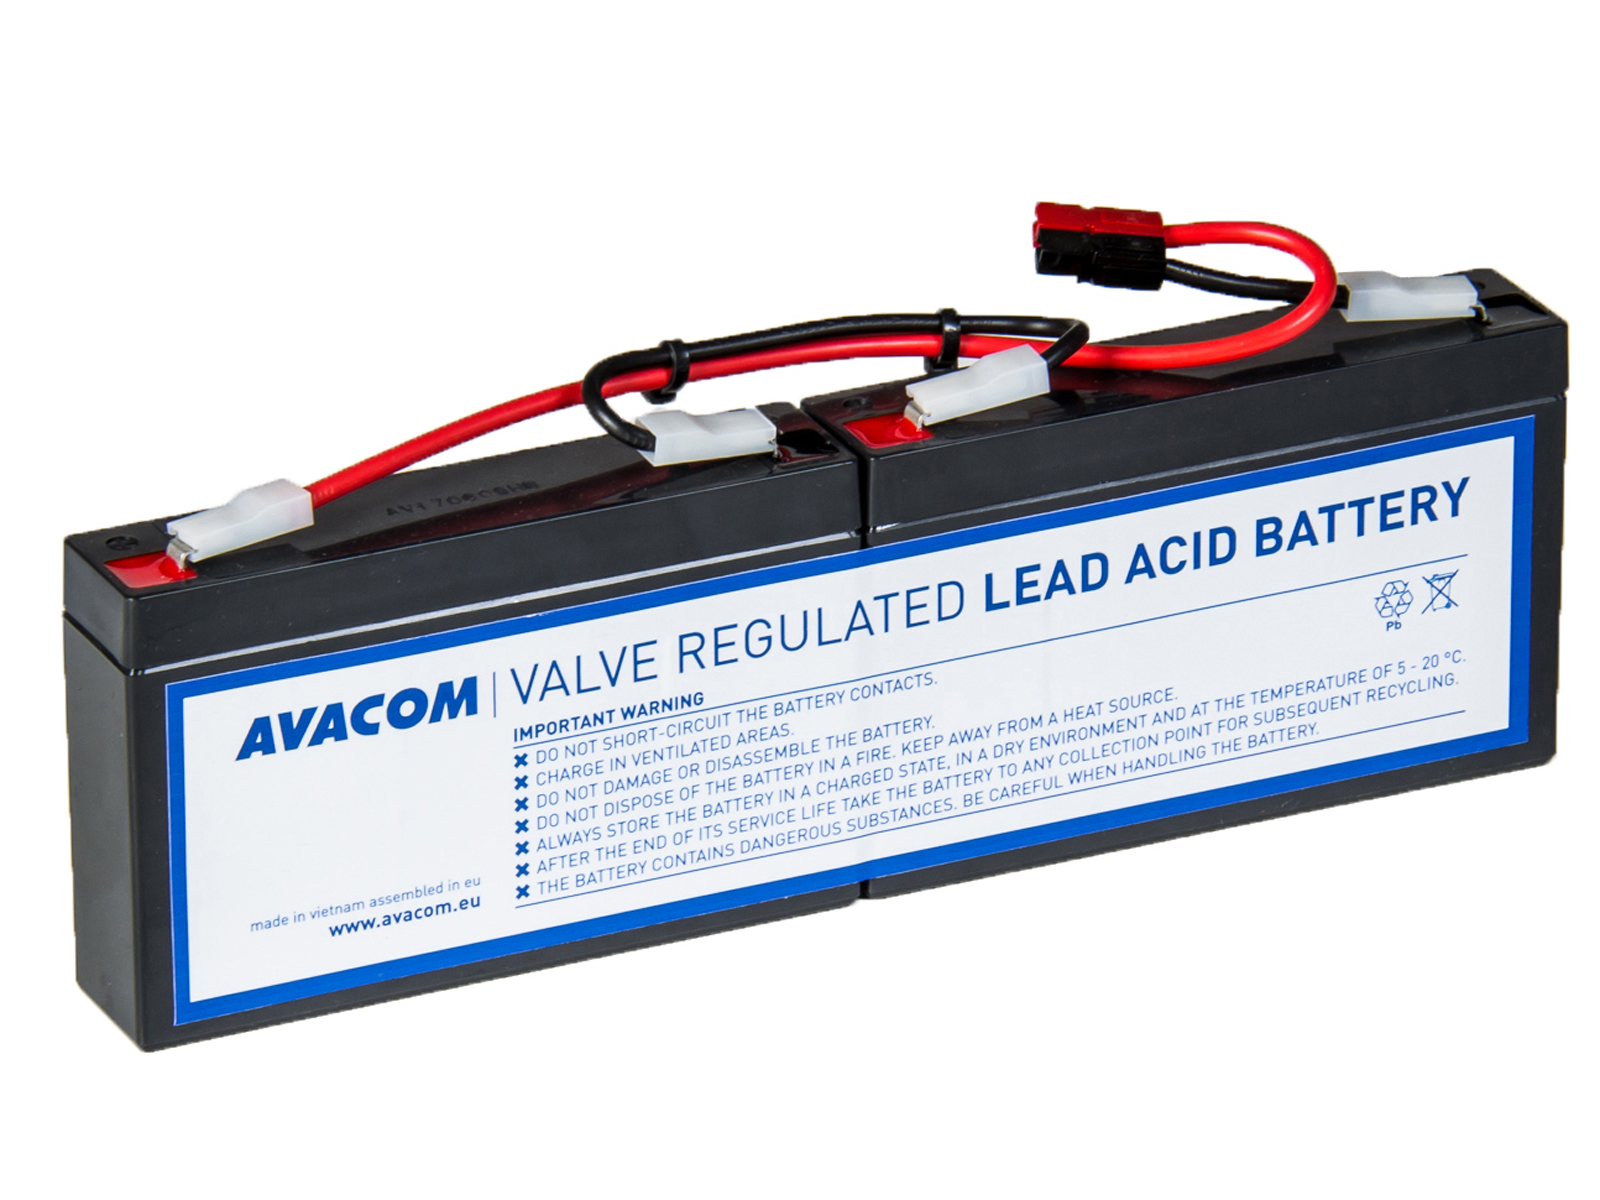 Baterie Avacom RBC18 bateriový kit - náhrada za APC - neoriginální